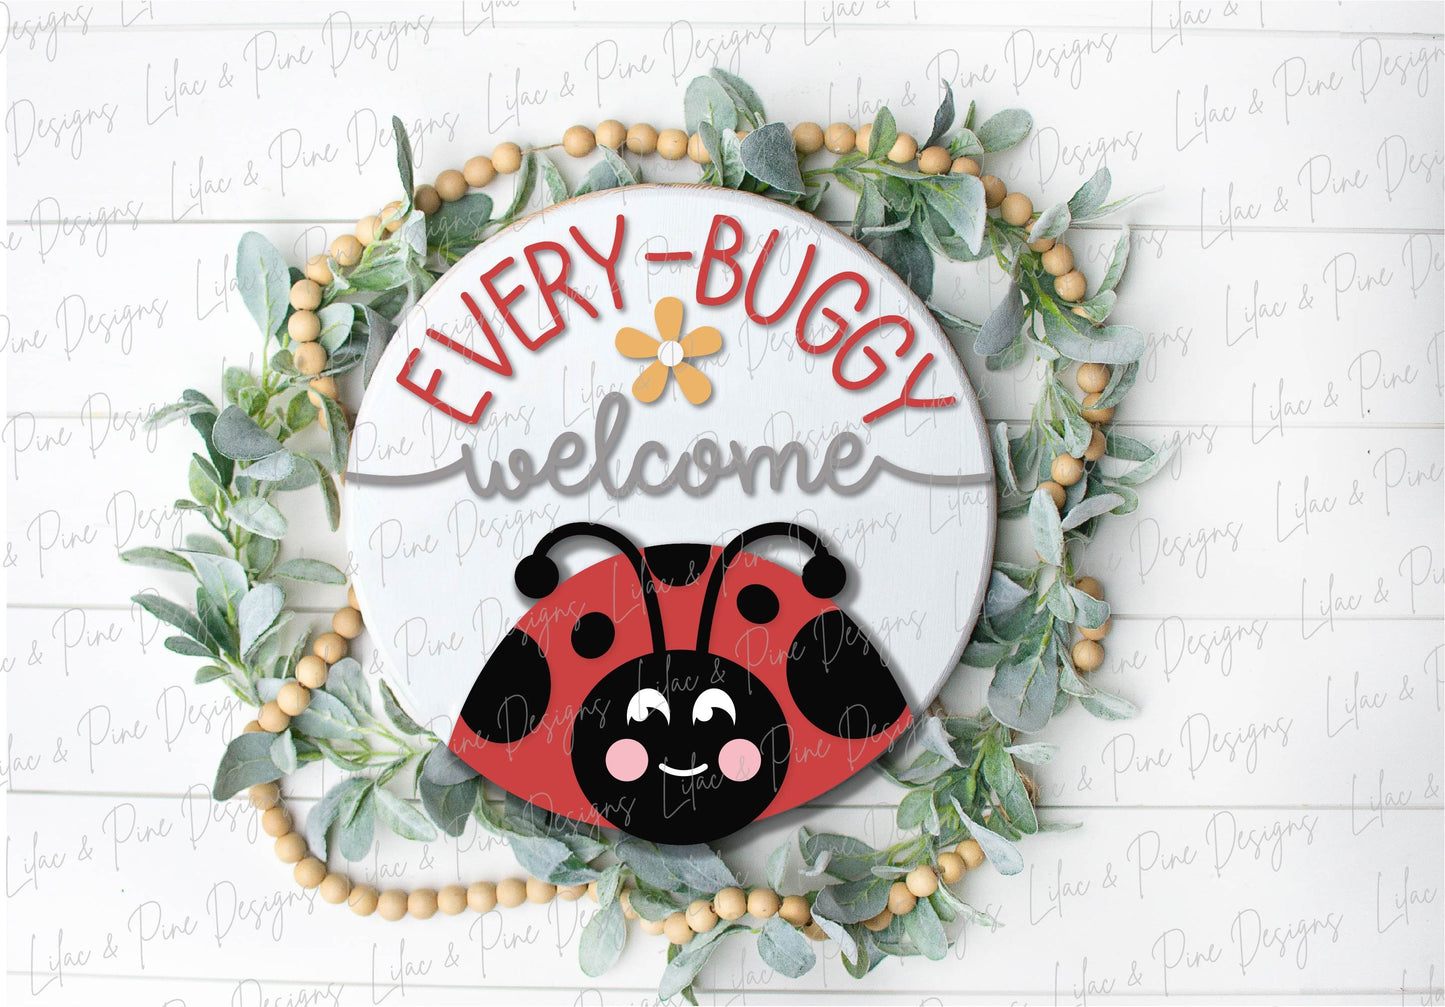 Ladybug Welcome door hanger SVG, ladybug welcome sign, Ladybug porch sign SVG, Summer svg, summer welcome svg, Glowforge svg, laser cut file